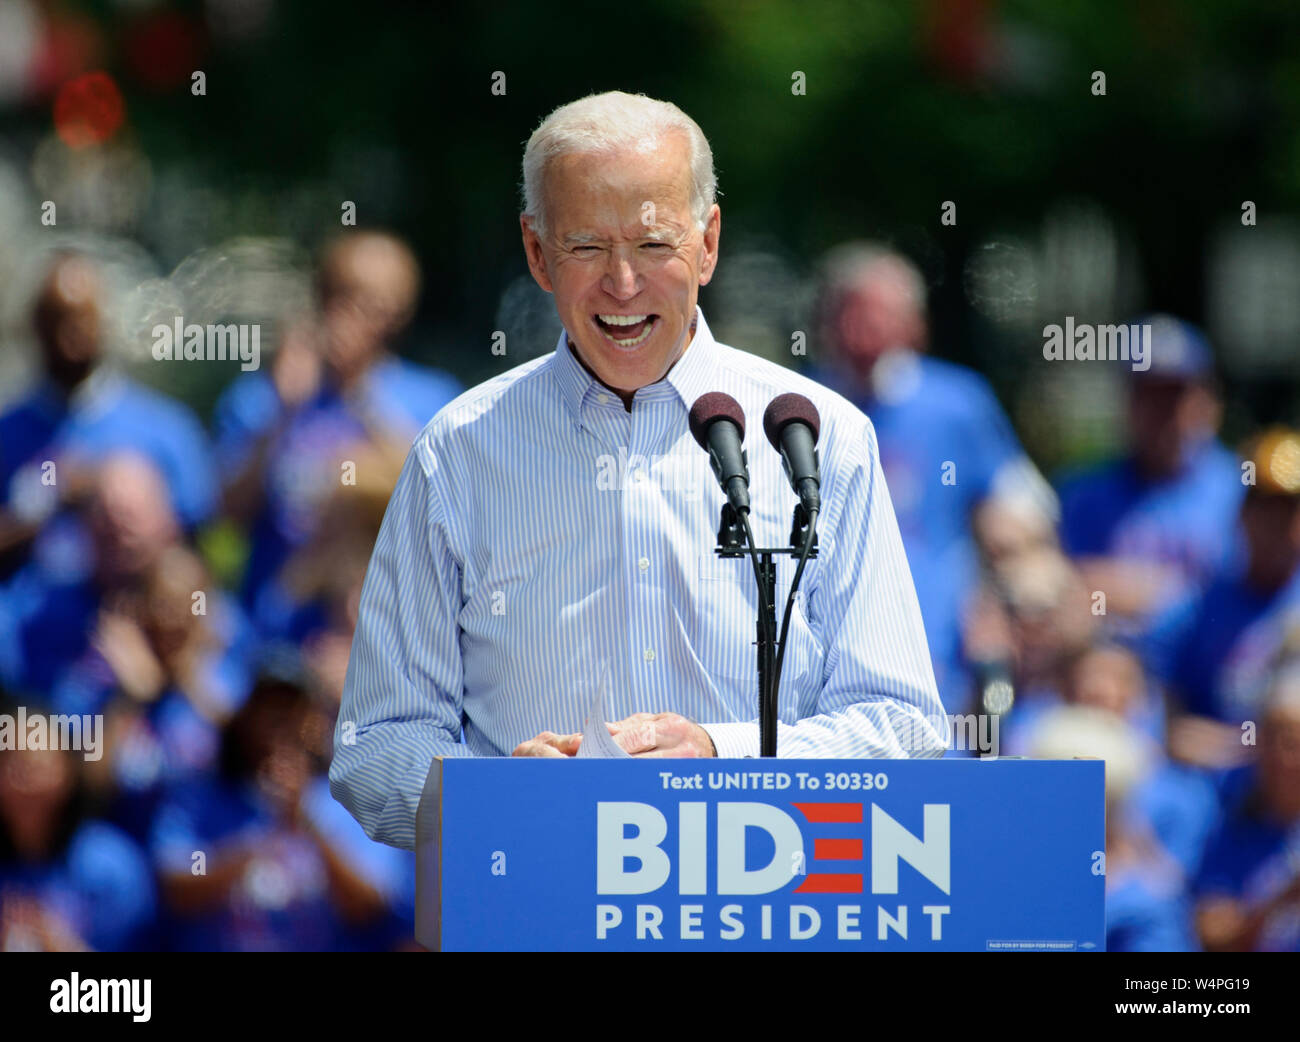 Candidat à l'élection présidentielle 2020 Joe Biden s'affiche lors de son lancement de campagne à ovale Eakins à Philadelphie, Pennsylvanie. Banque D'Images